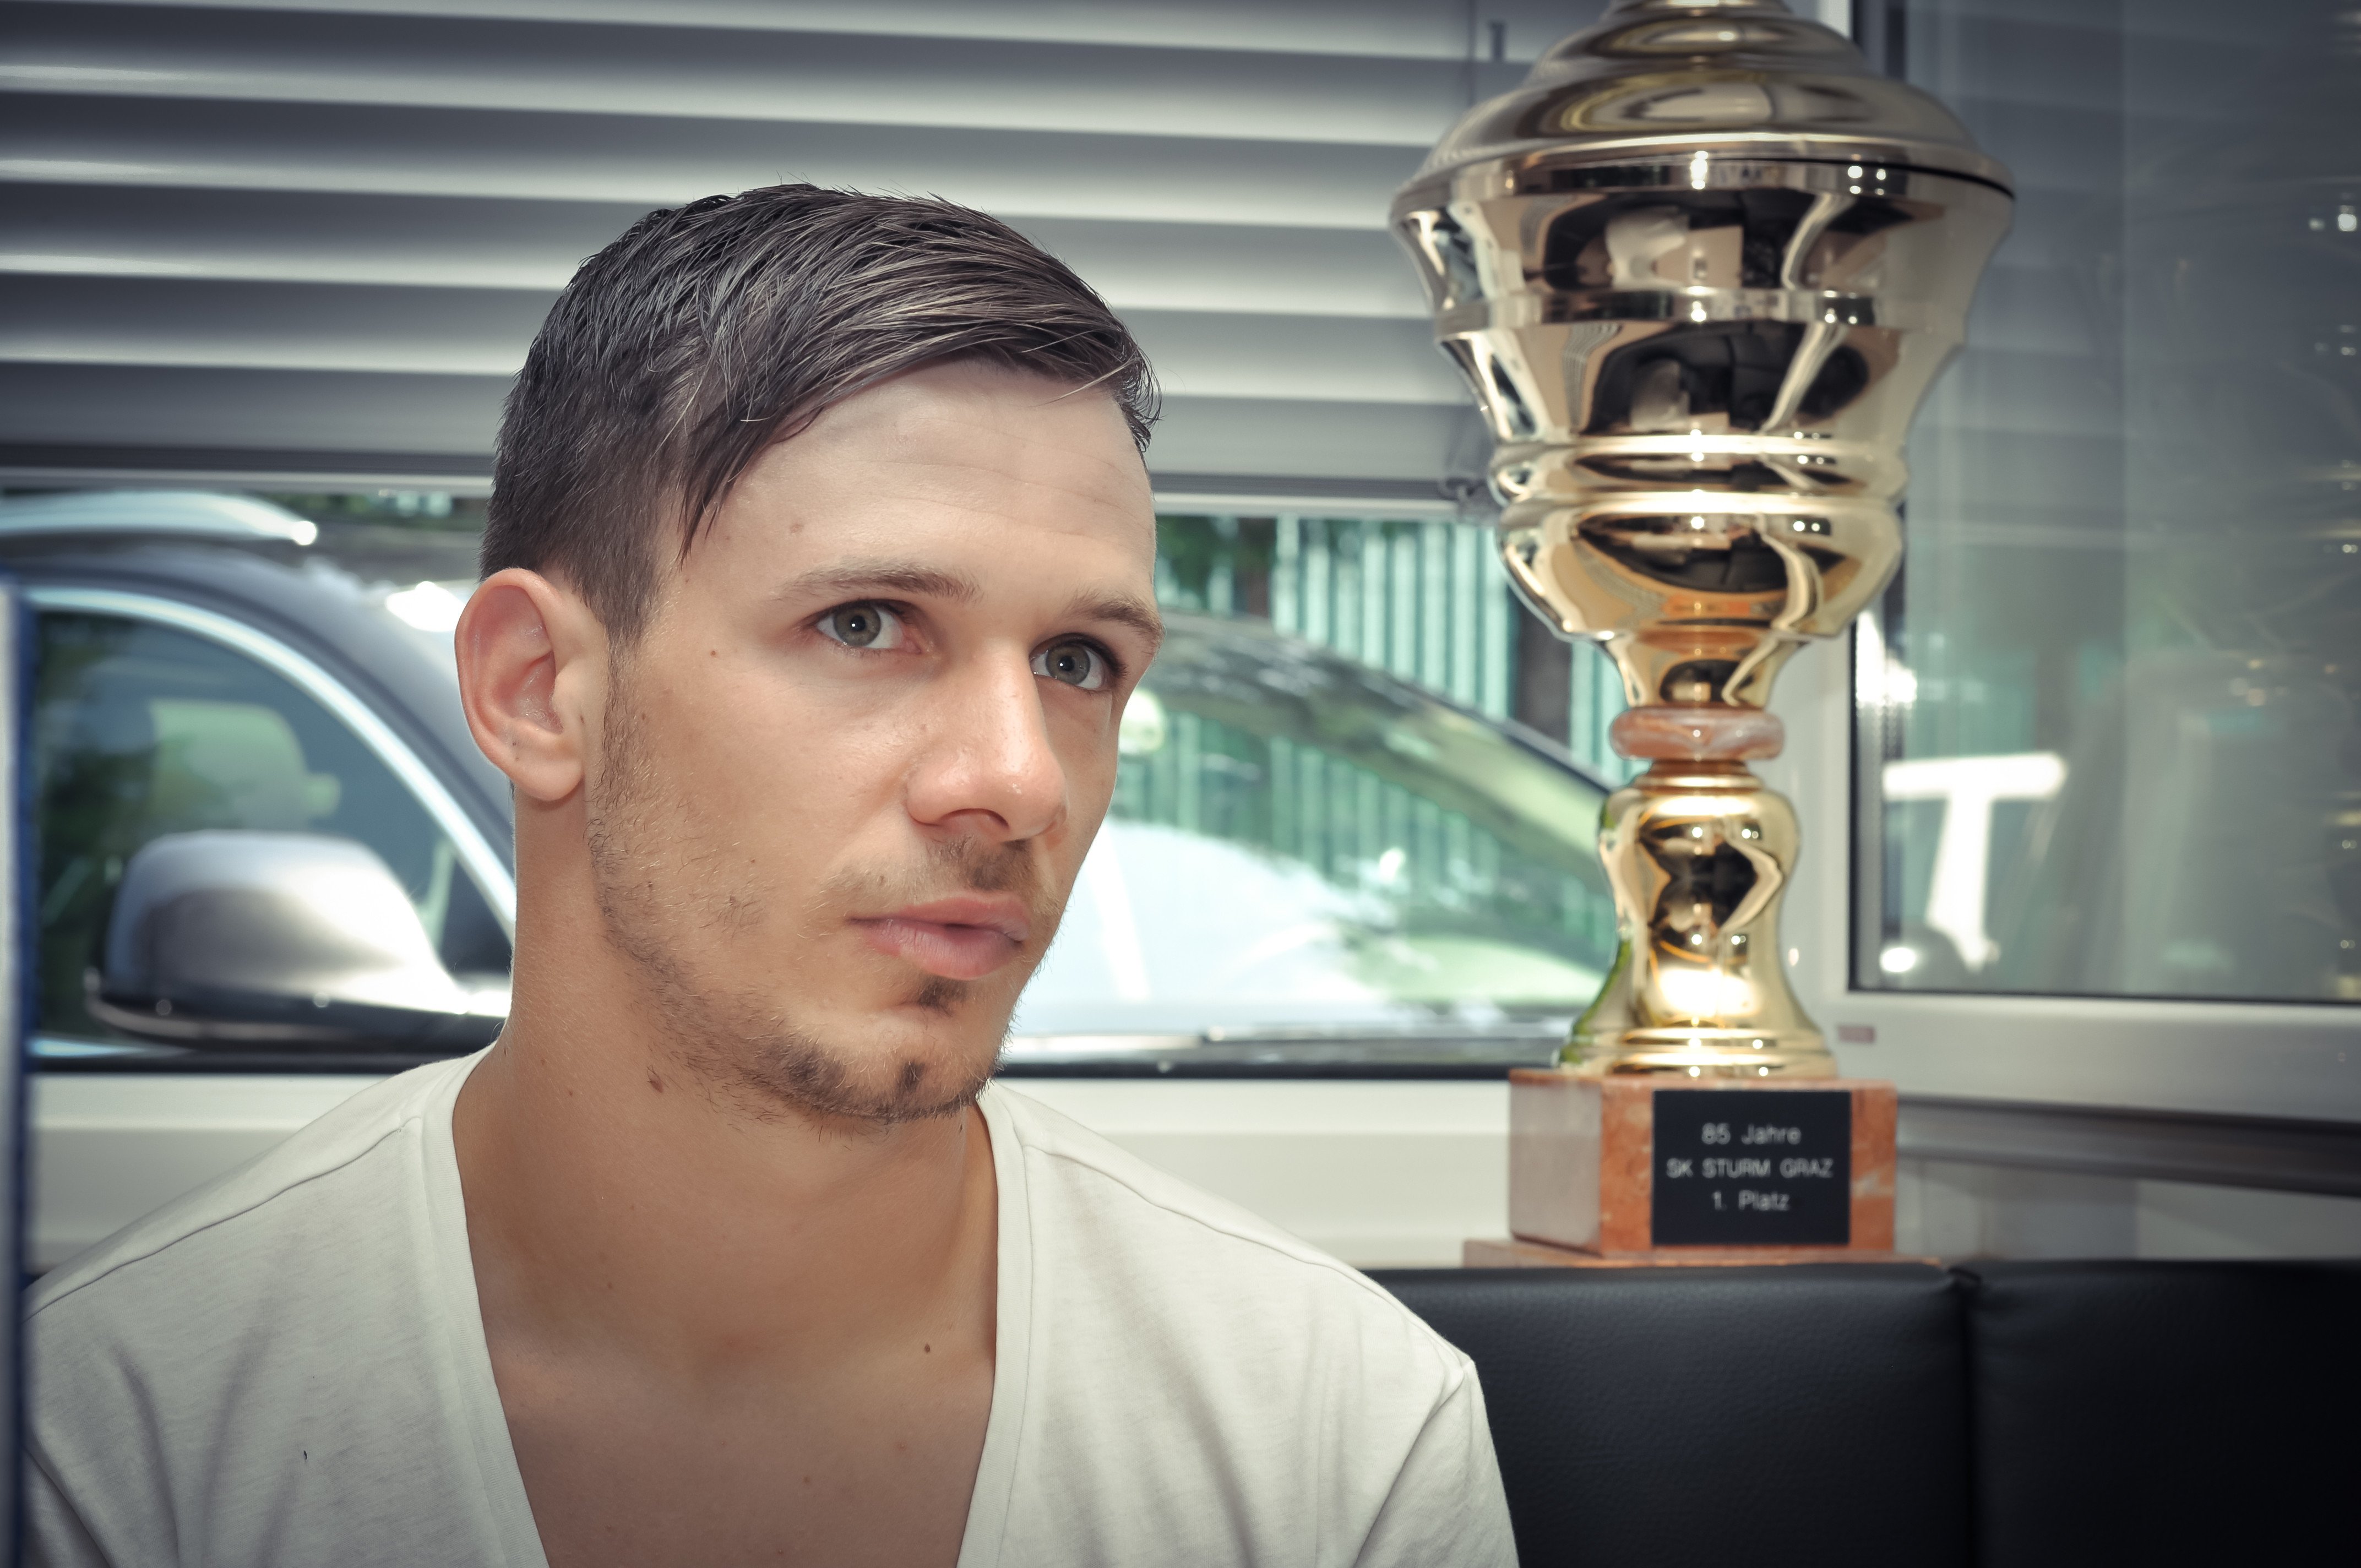 Graz, Sturm-Trainingszentrum, Sturm-Spieler Daniel Offenbacher im Porträt für ein Interview.